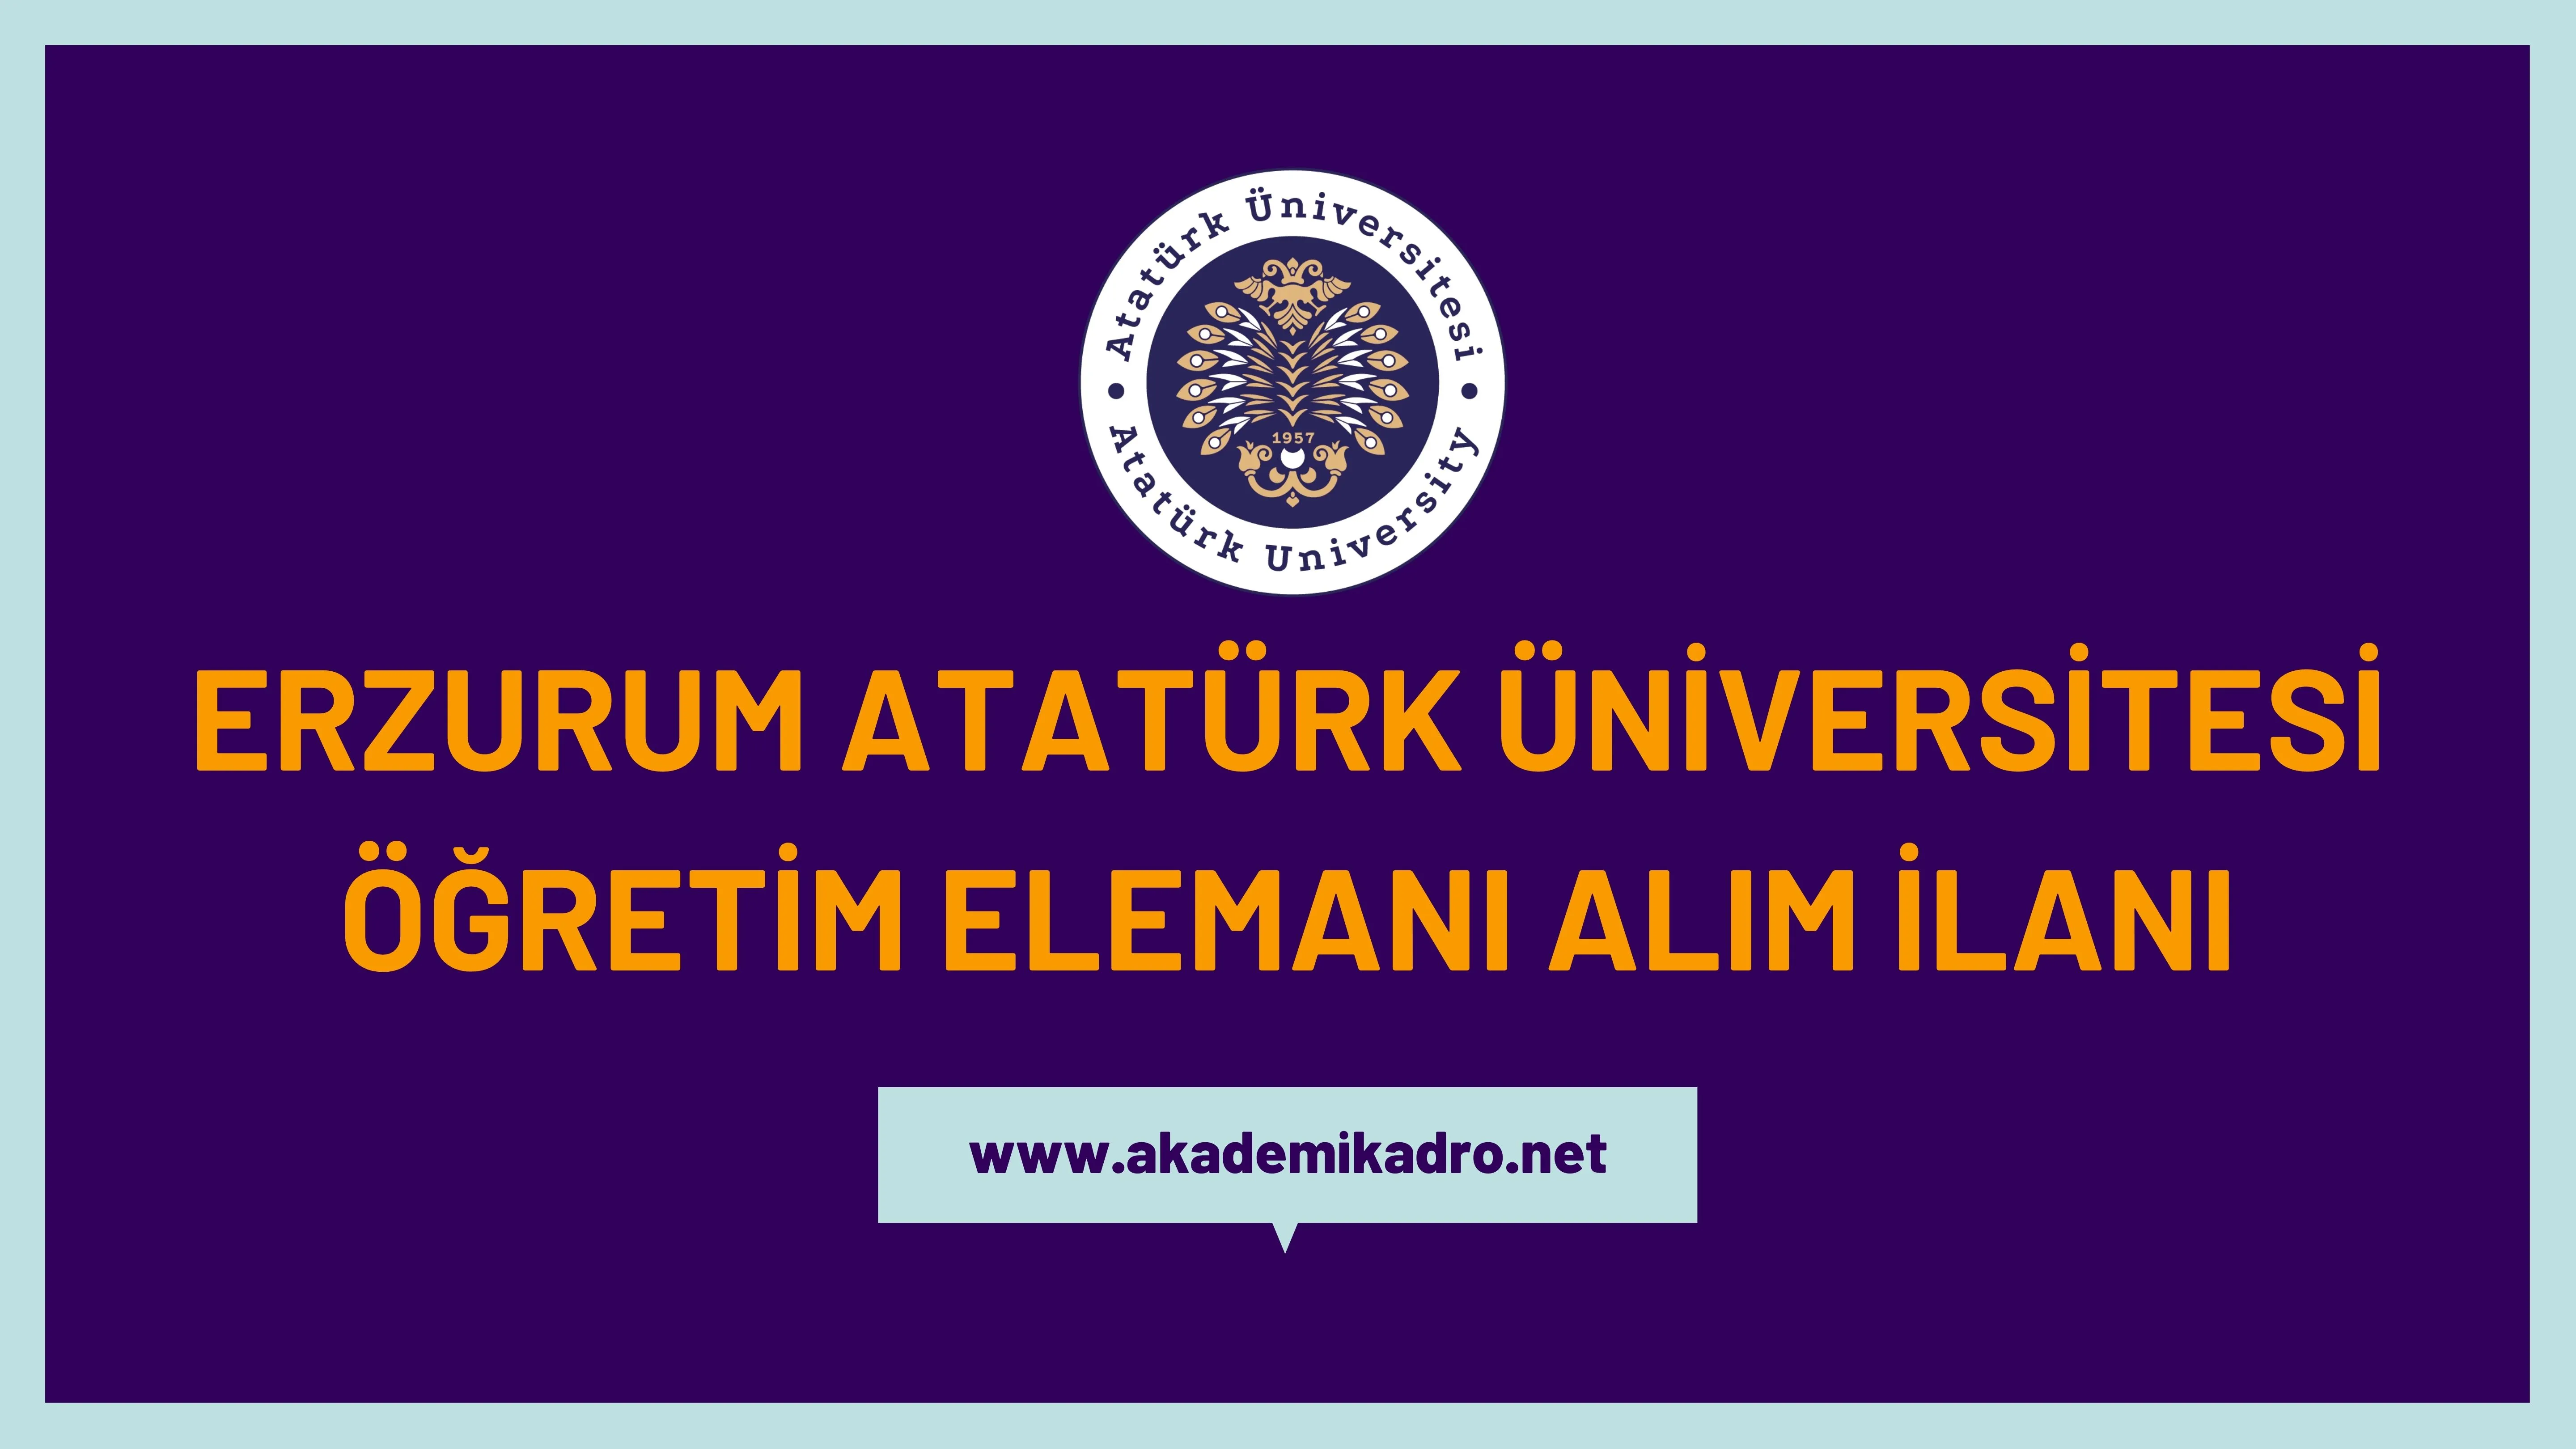 Atatürk Üniversitesi Araştırma görevlisi, 5 Öğretim görevlisi ve 2 Öğretim üyesi alacak. Son başvuru tarihi 11 Ocak 2023.